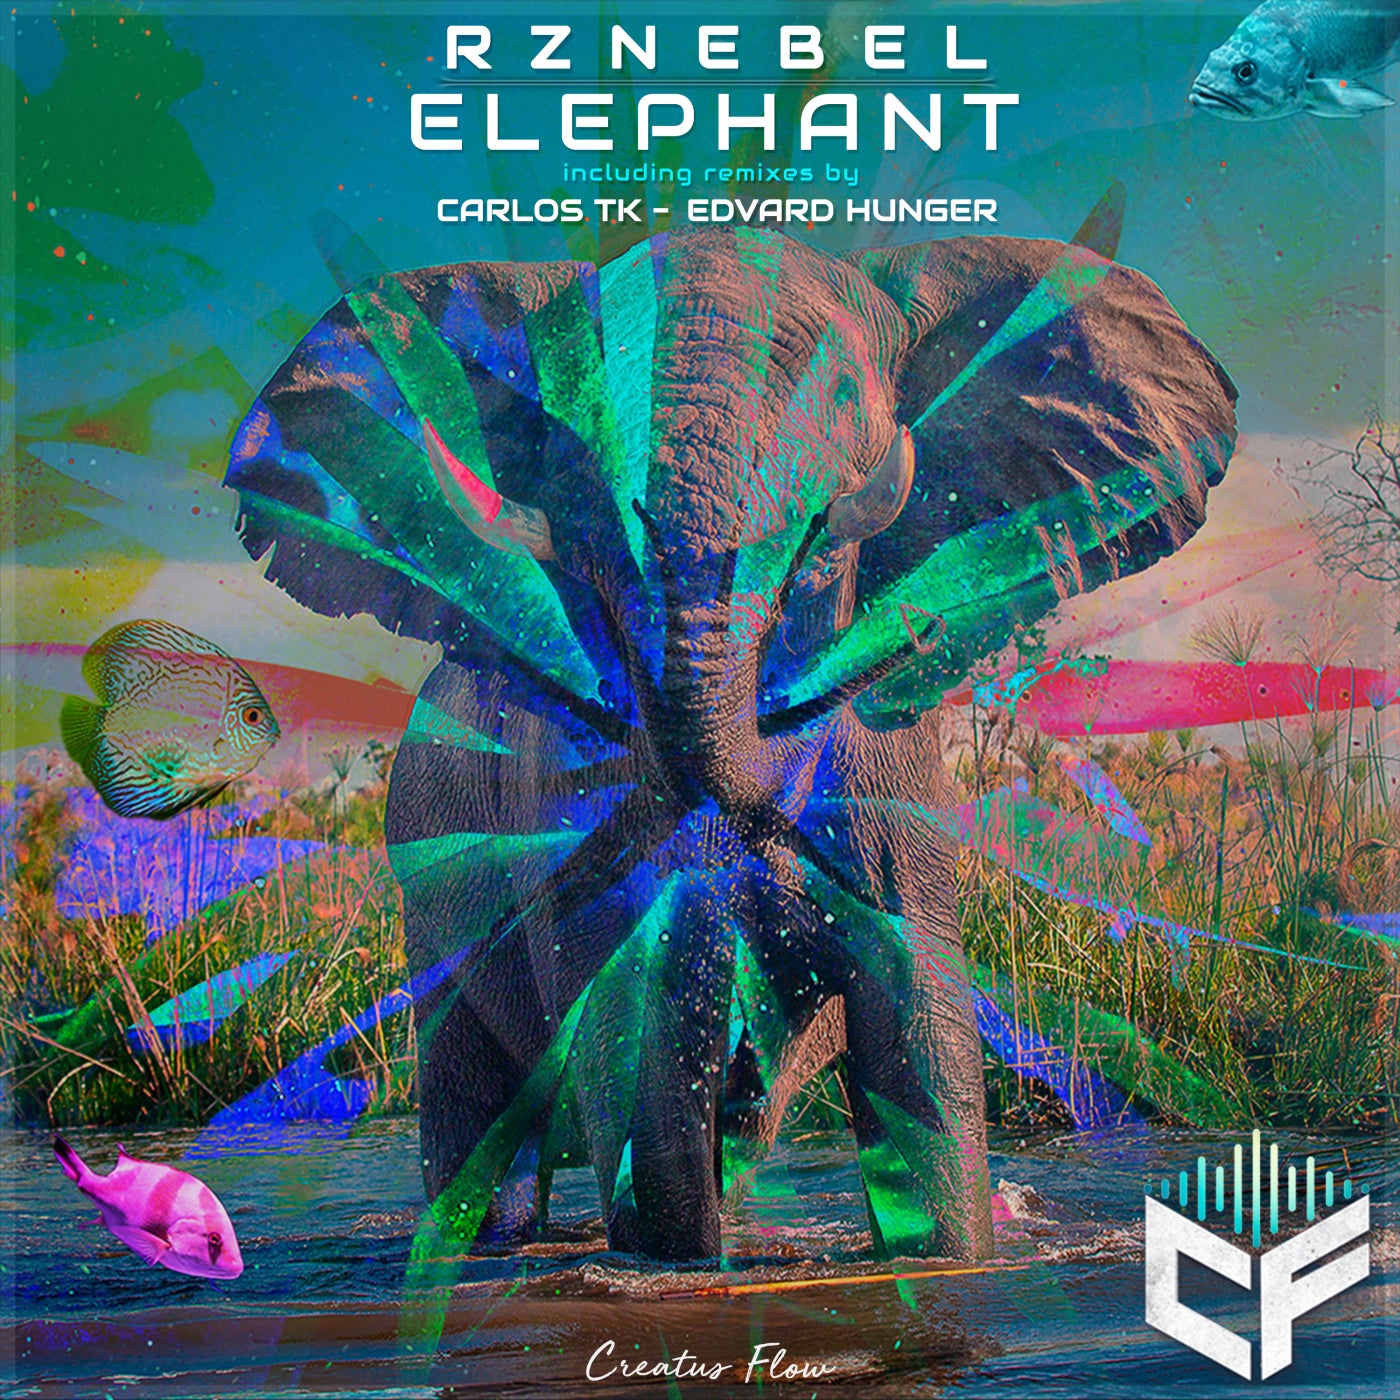 Osiris Rhyme Remix Elephant. Stylust, Ashez - the Elephant (Original Mix). Elephant remix